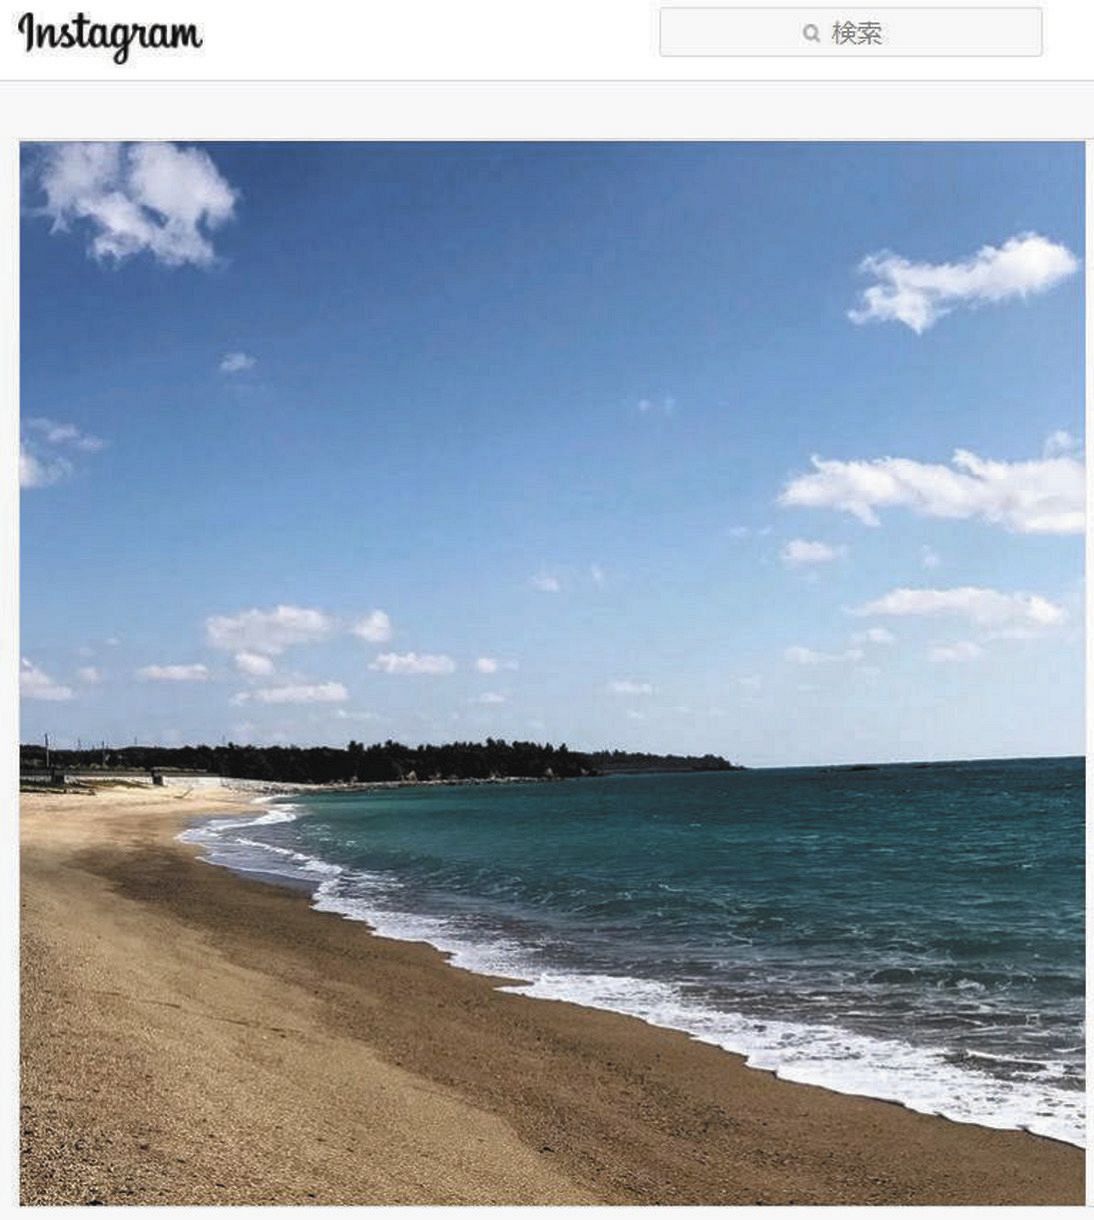 宮里藍さんが妊娠報告で投稿した砂浜の写真（本人のインスタグラムから）